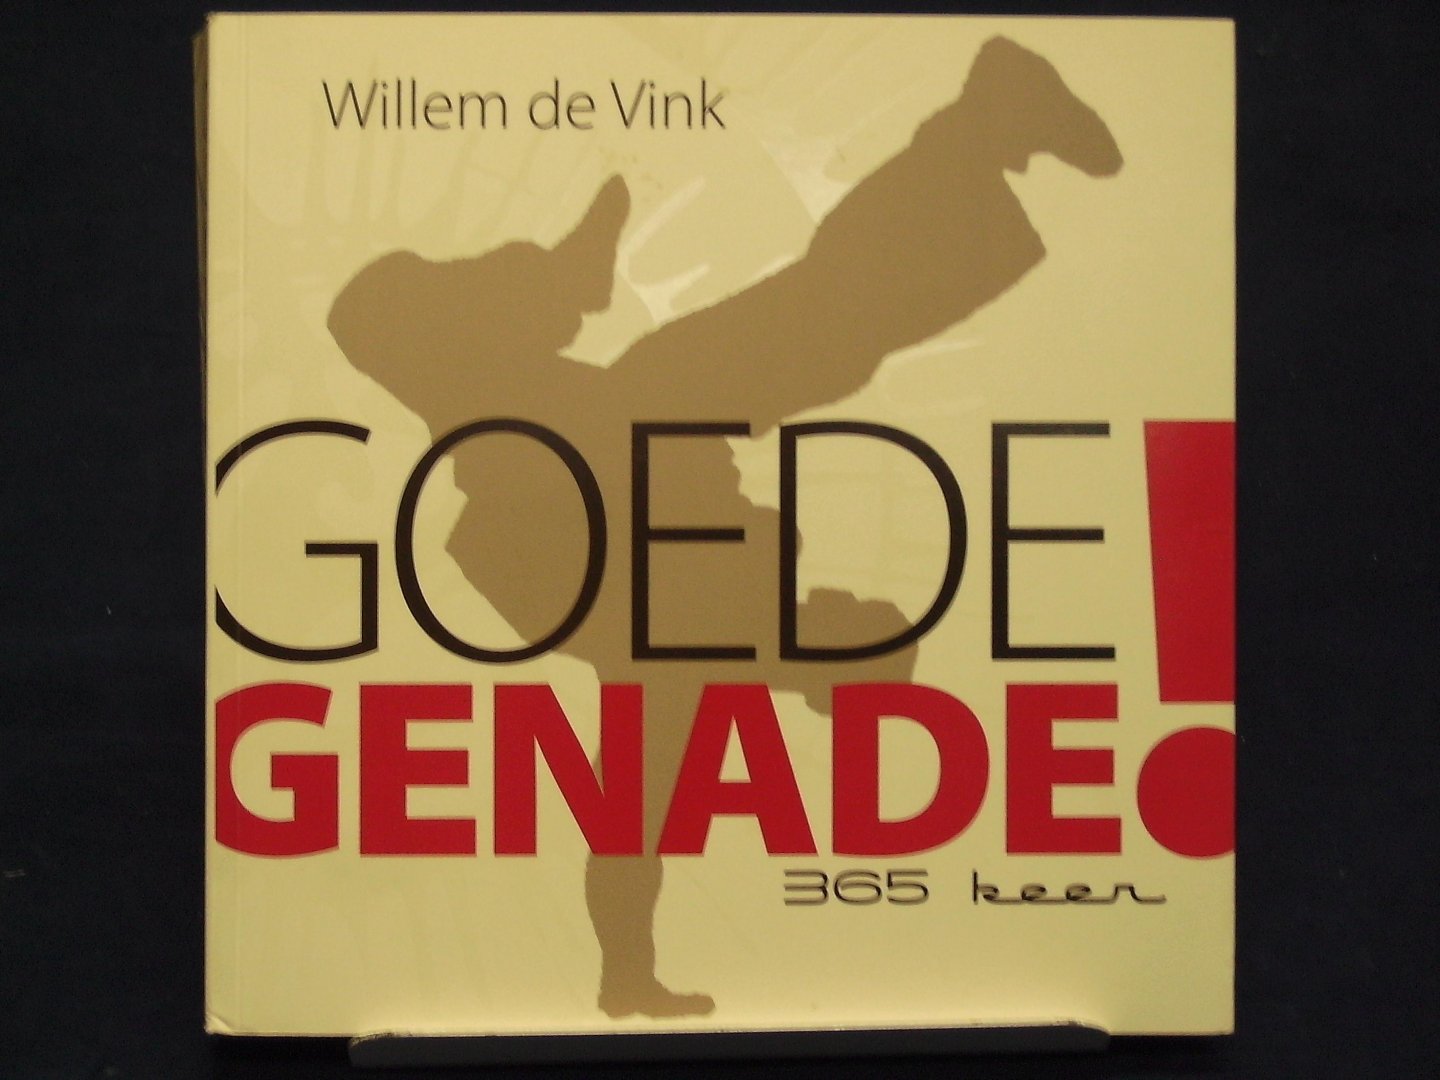 Vink, Willem de - Goede genade ! / 365 keer